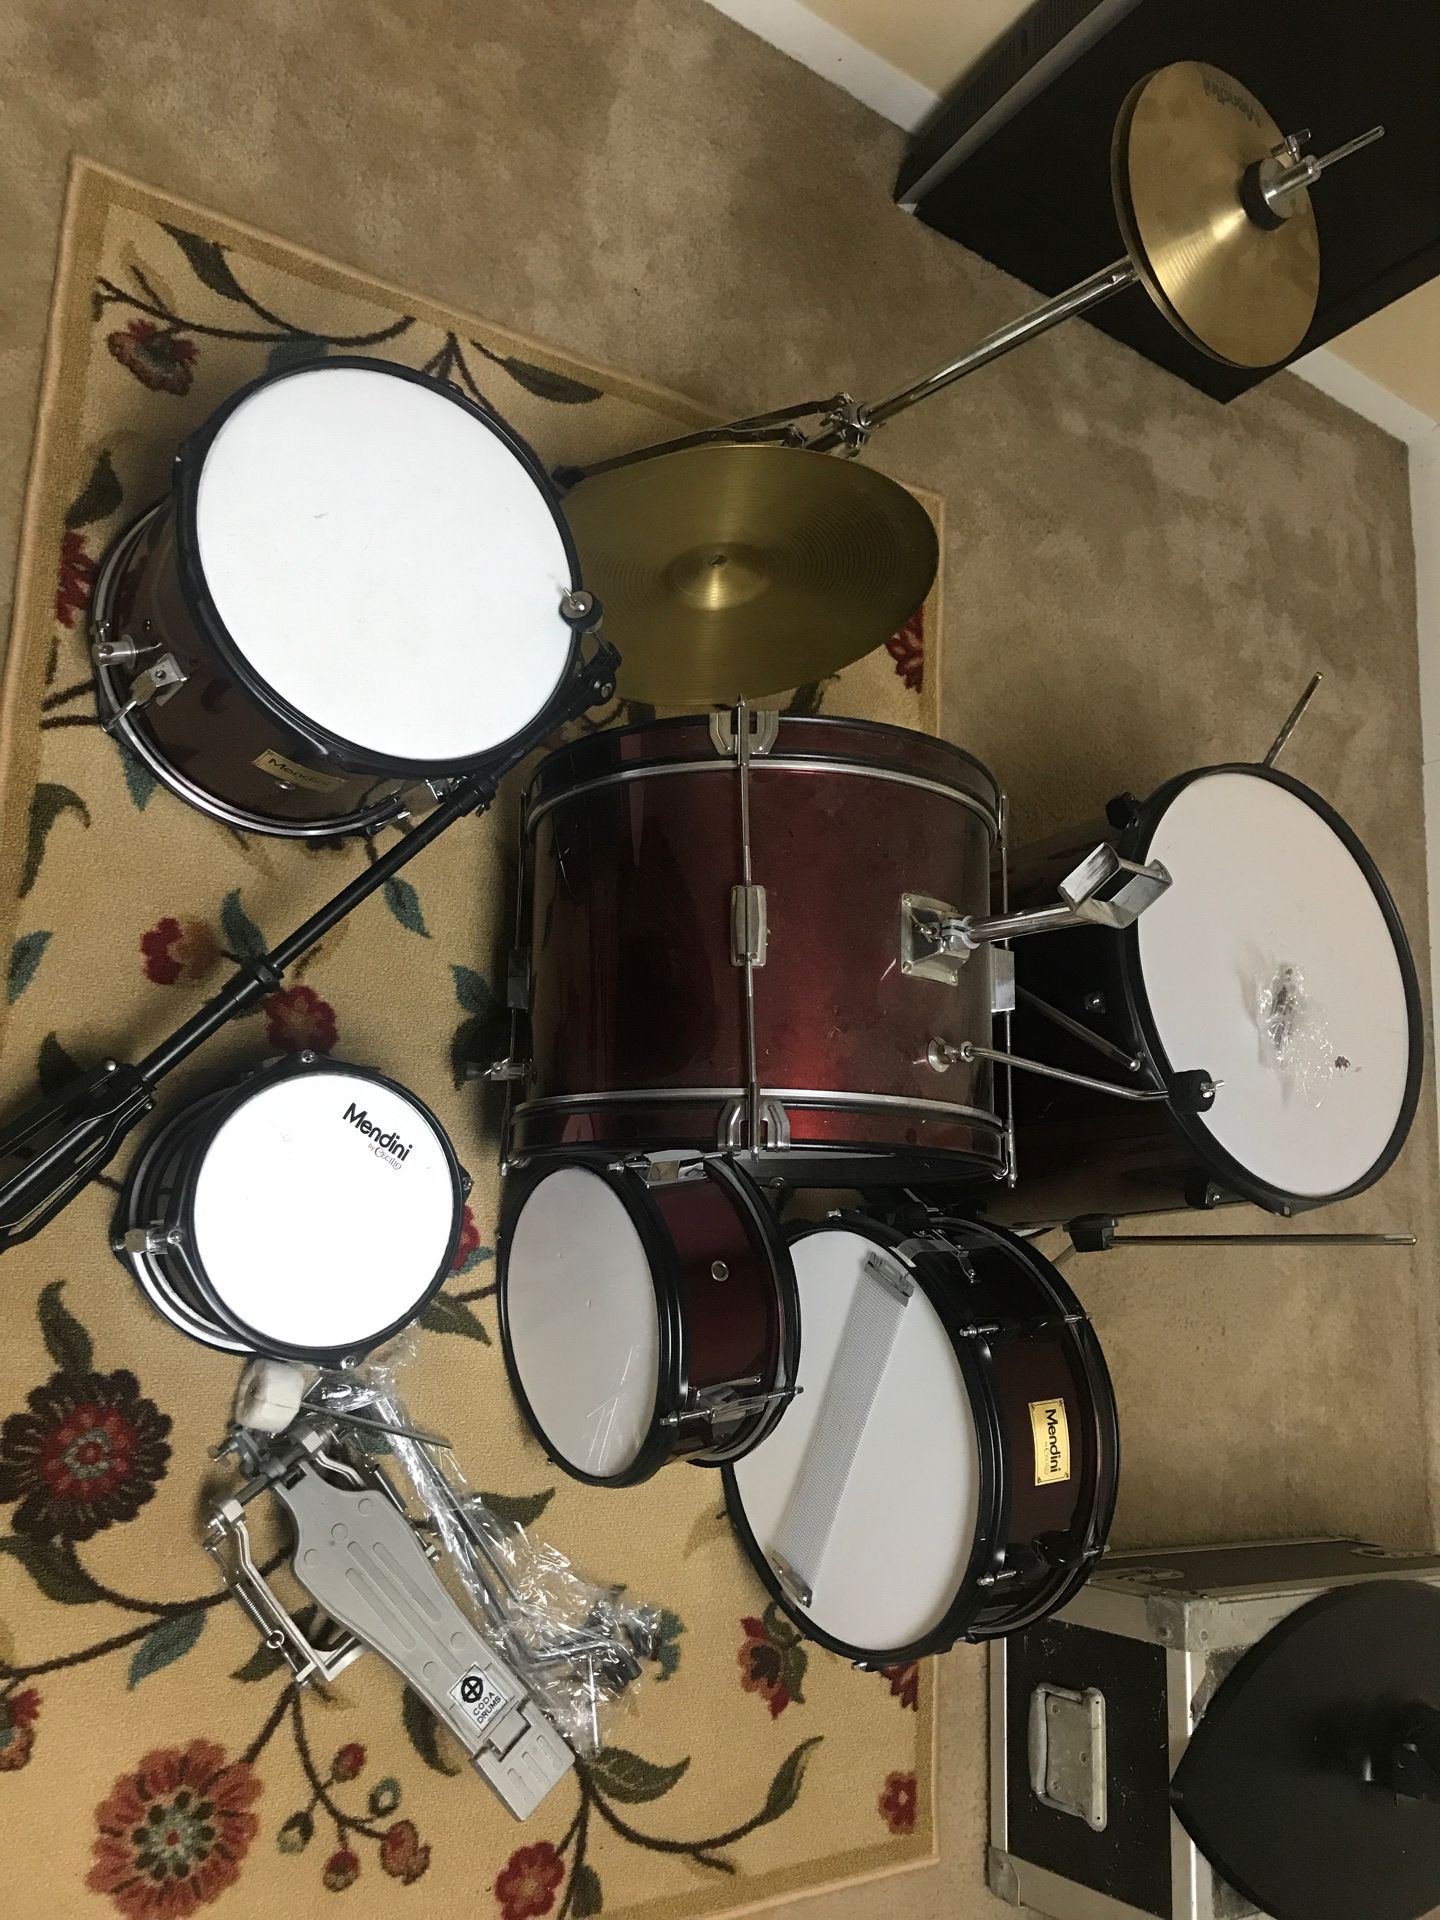 Child sized drum set